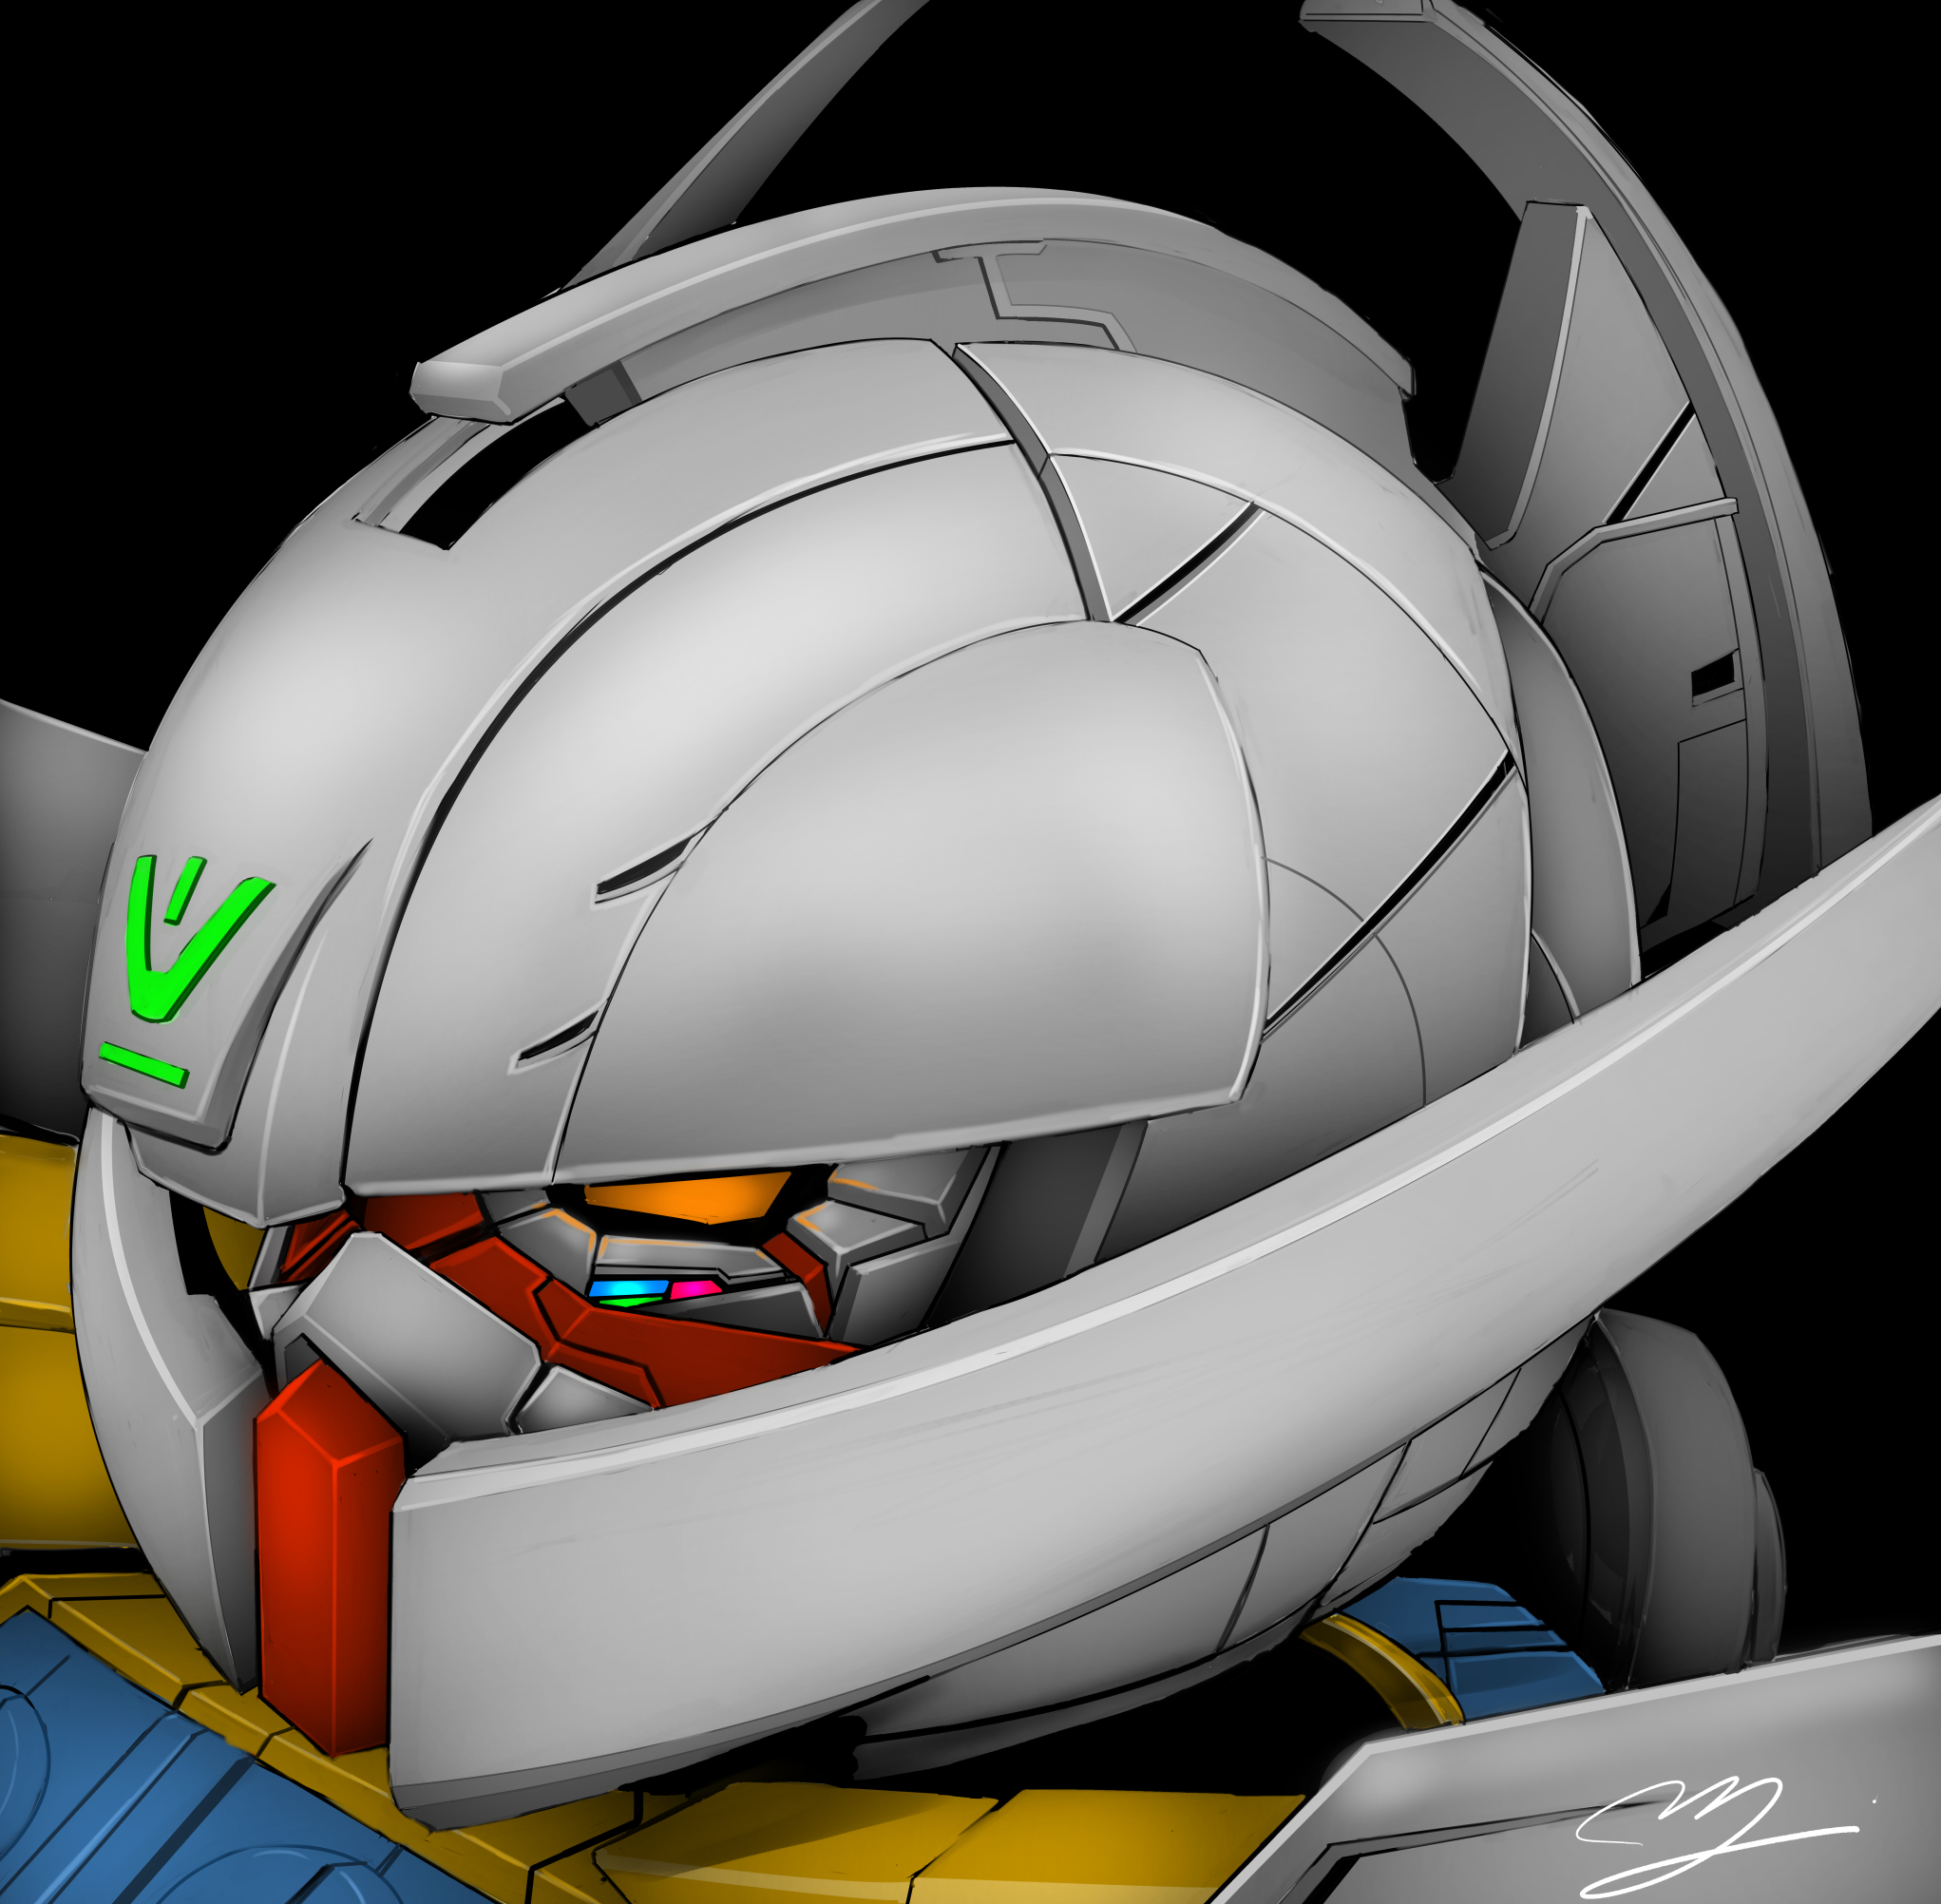 Anime 2043x2004 anime mechs Super Robot Taisen ∀ Gundam System-∀99 ∀ Gundam Gundam artwork digital art fan art